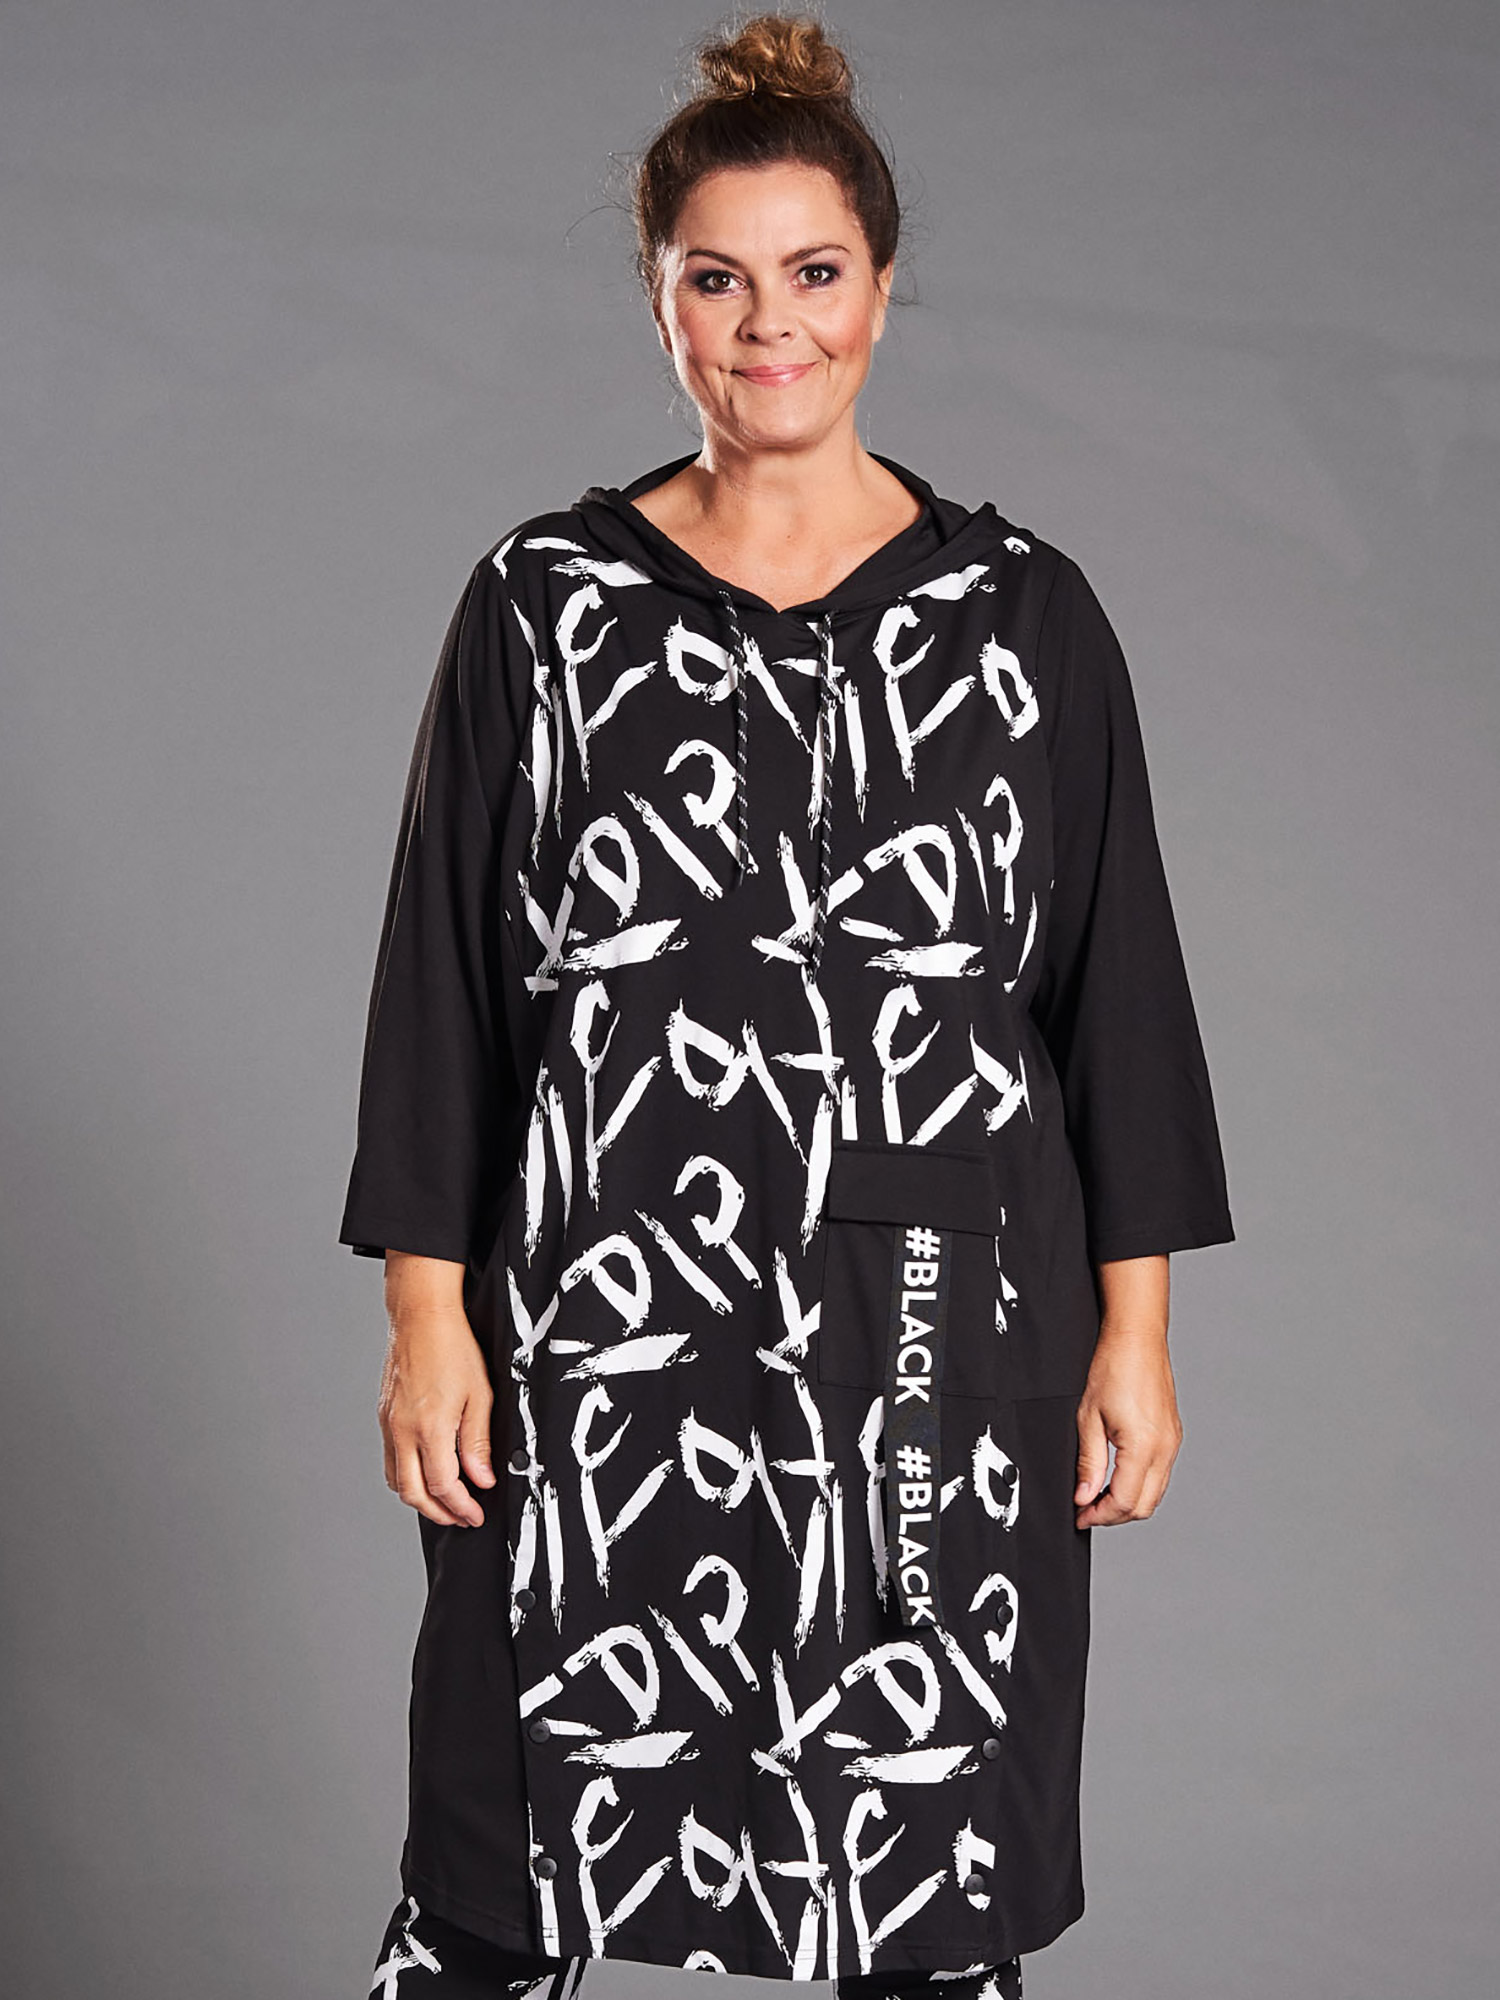 Billede af Gozzip Black Luna - Sort kjole i lækker blød jersey med hvid print og hætte, 54-56 / XL